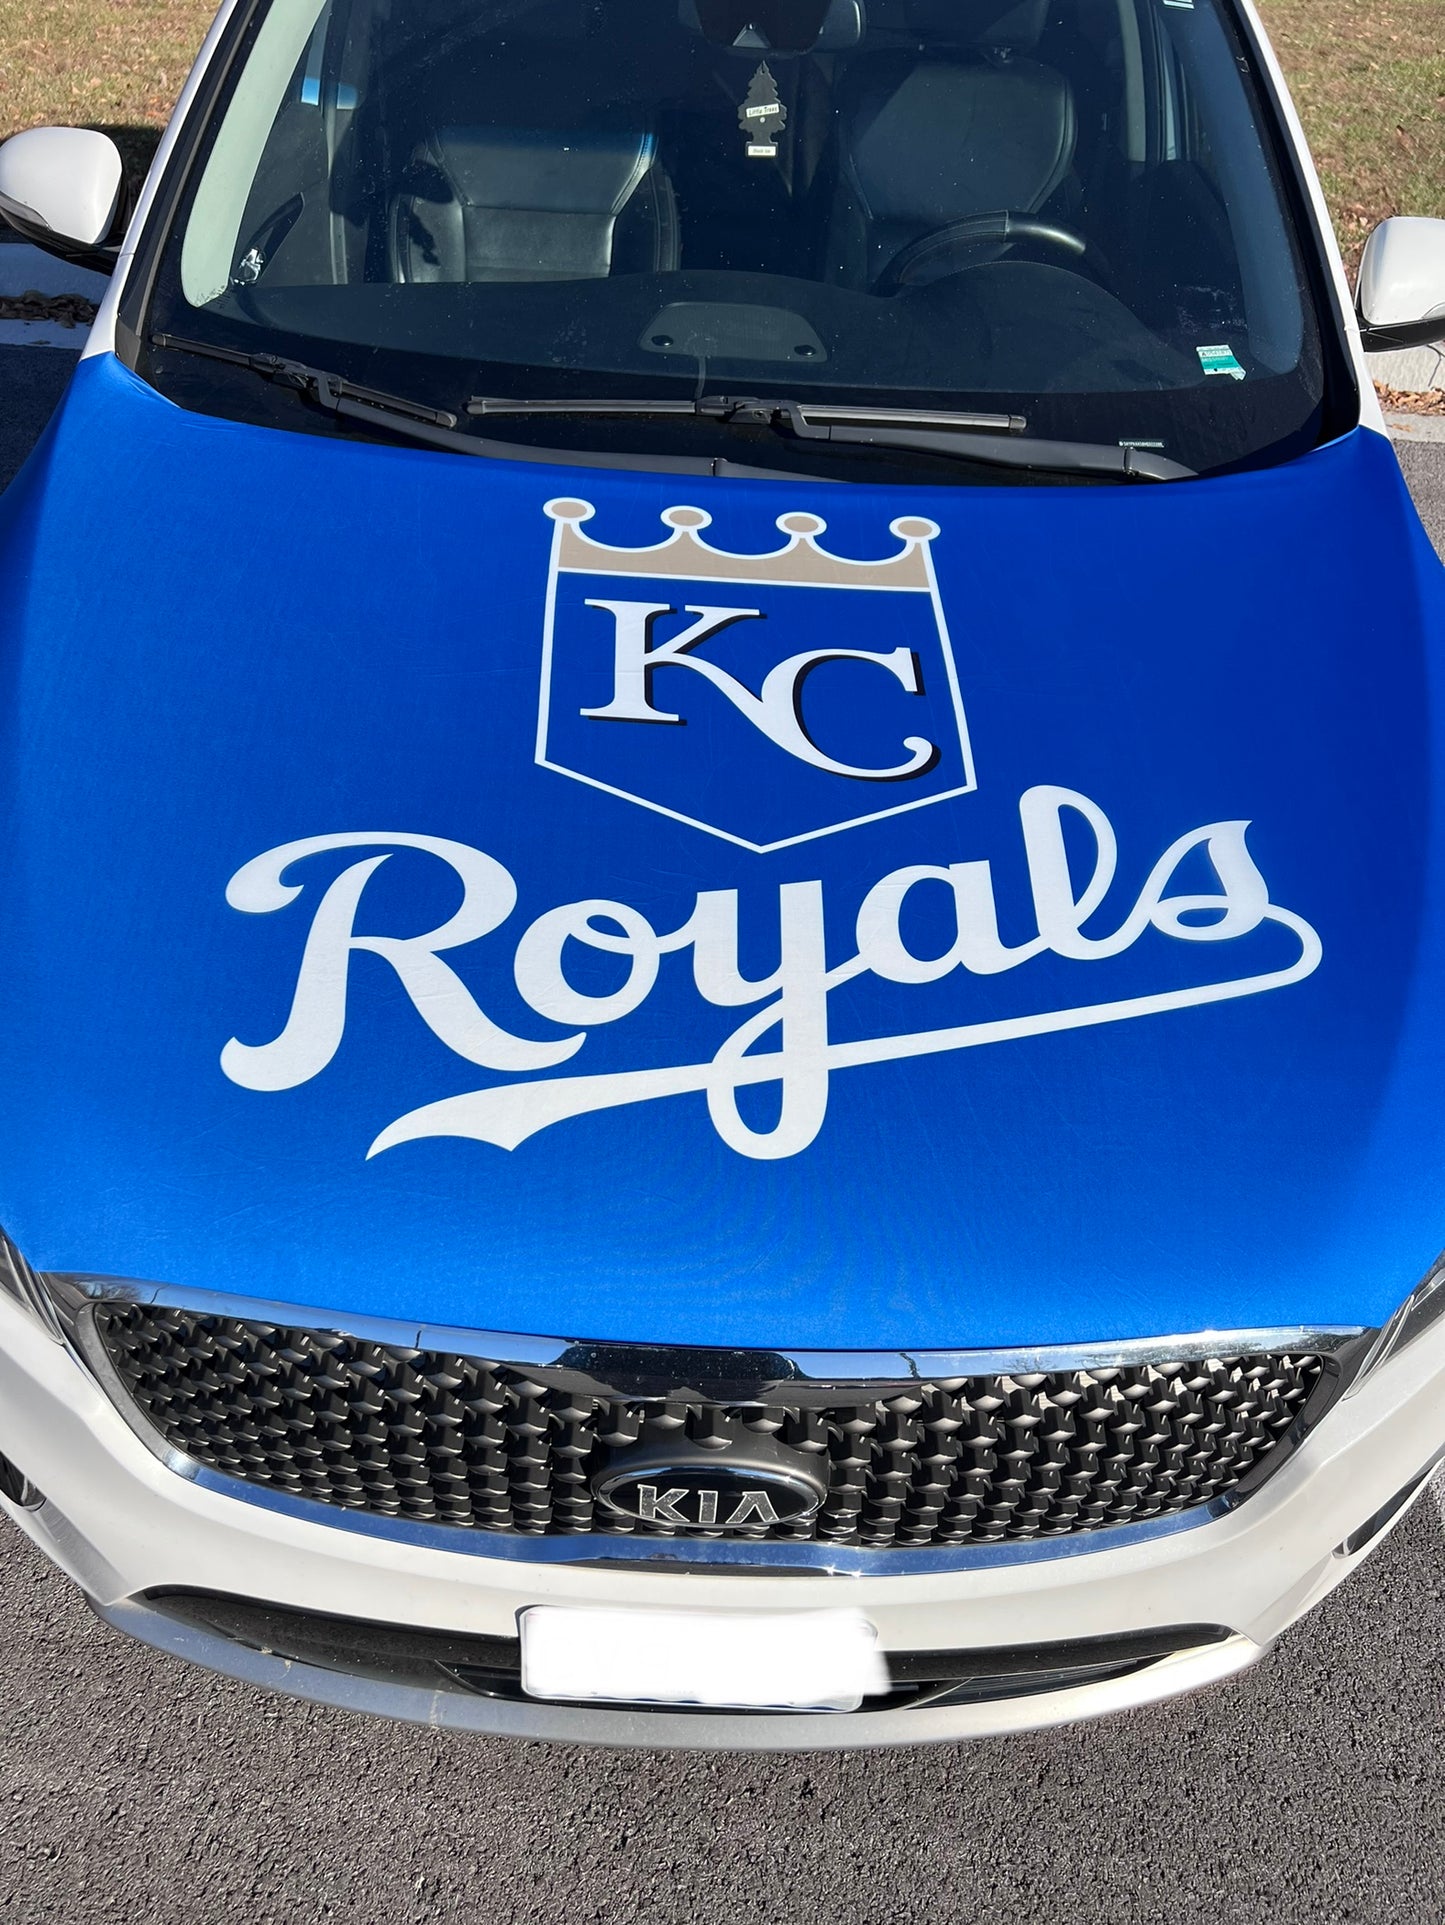 KC Royals Car Hood Cover